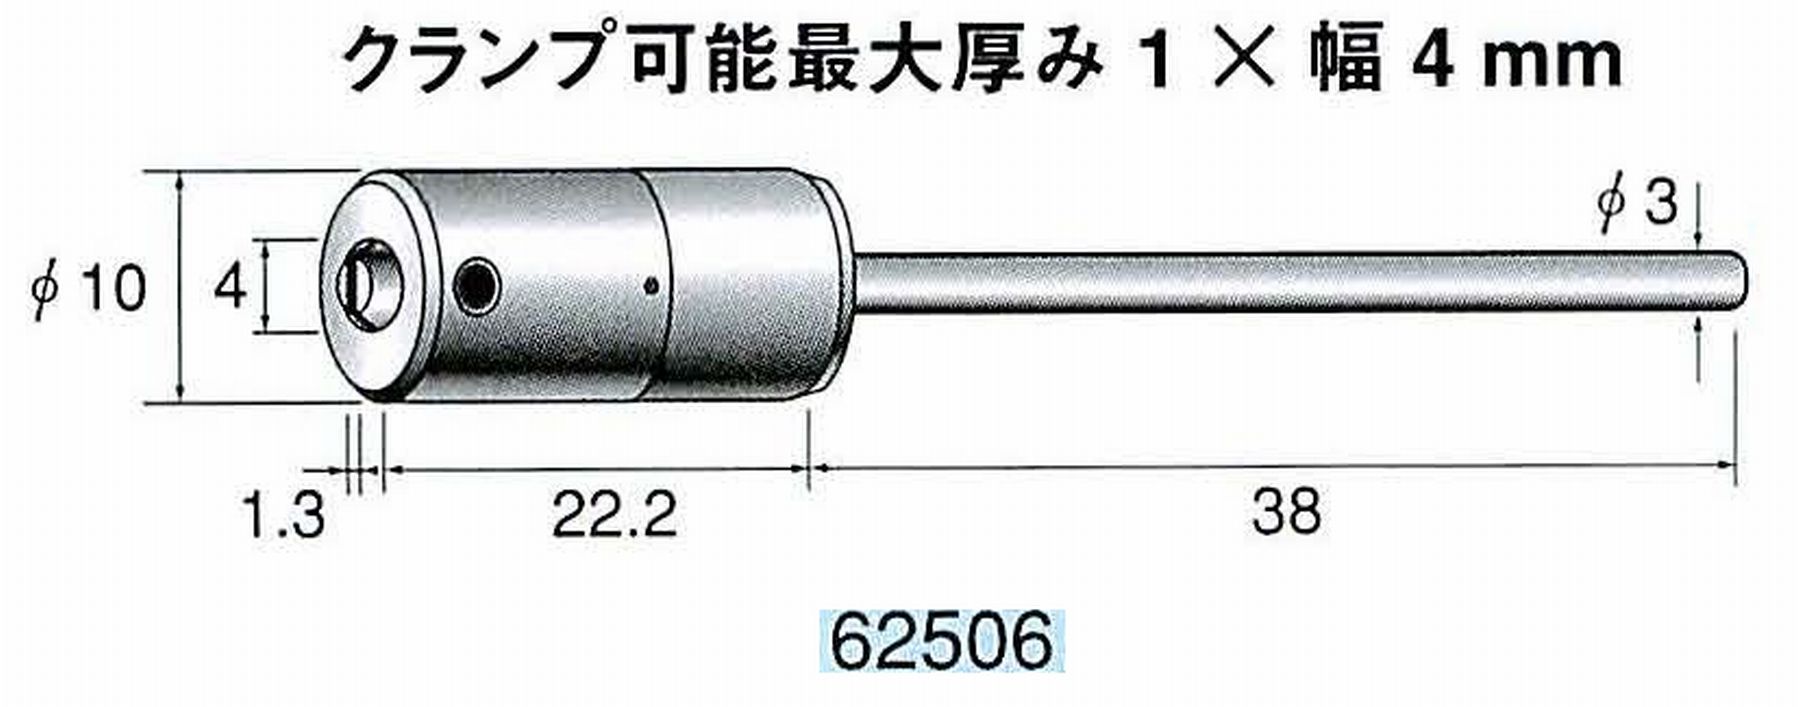 ナカニシ/NAKANISHI ハンディタイプ 電動・エアーヤスリ(往復動) ラスター専用工具 セラファイバーホルダ 62506